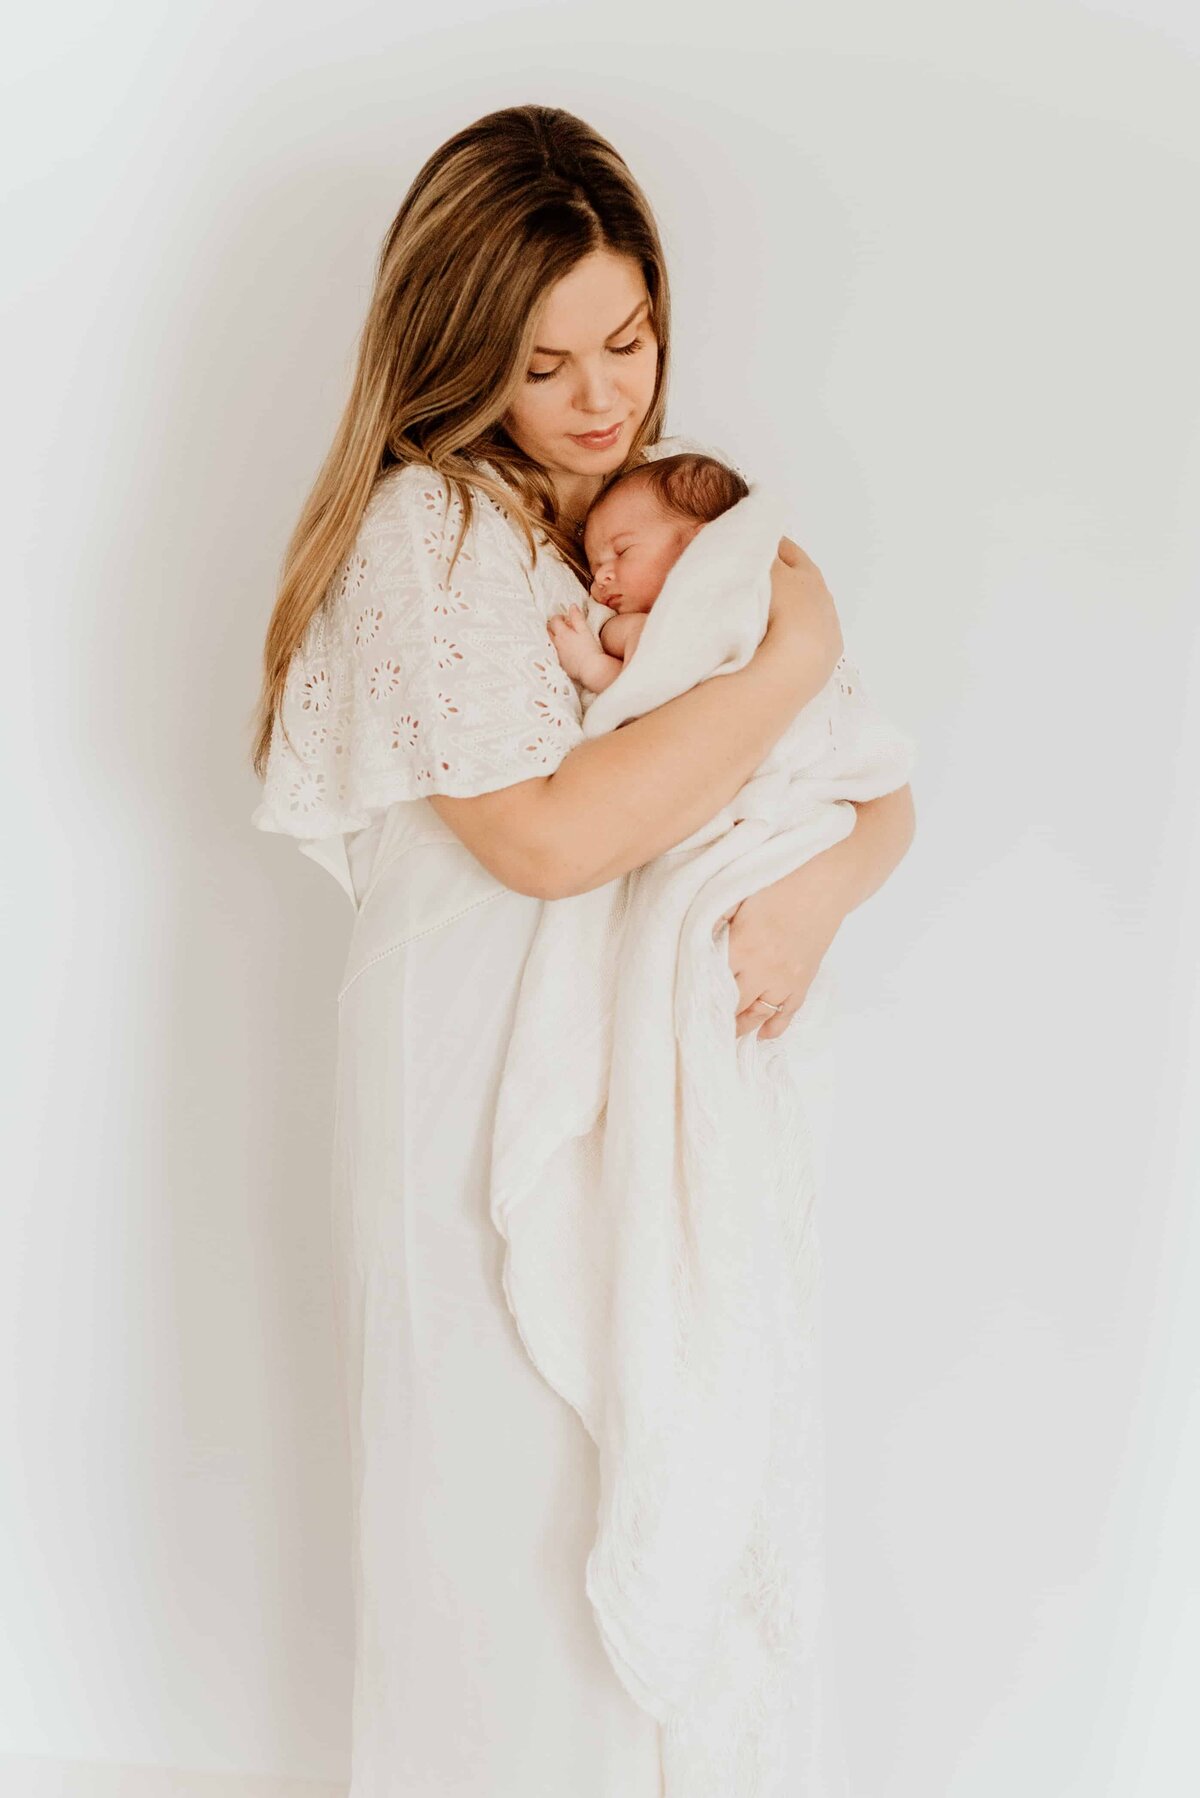 En mor står foran en hvit vegg og holder sin nyfødt datter i et teppe i armen under nyfødtfotografering hjemme.